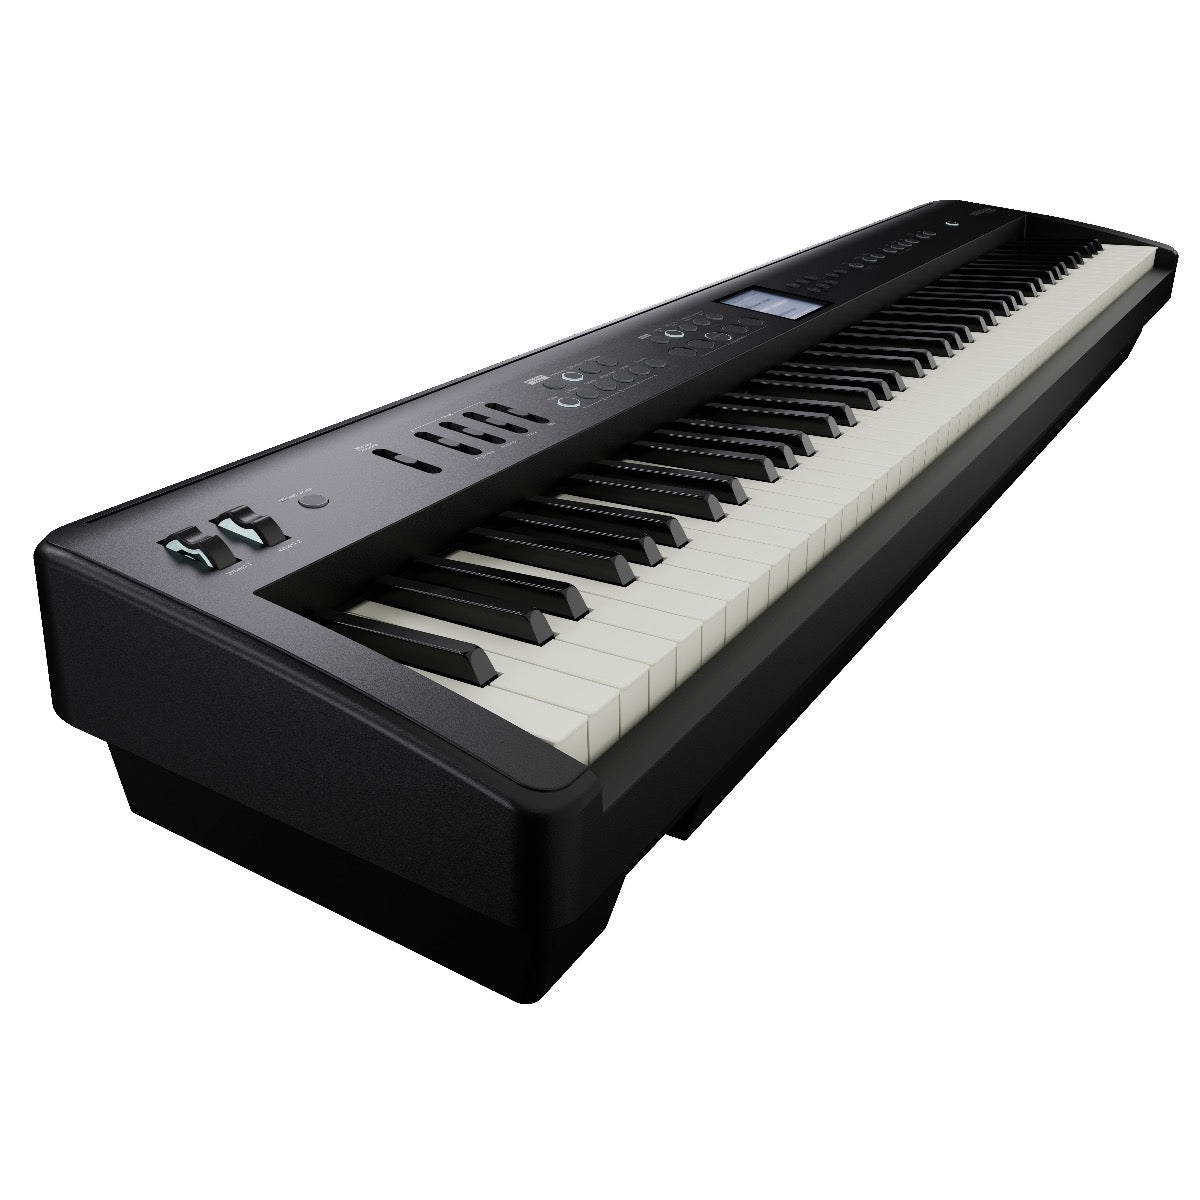 Roland FP-E50 Digital Piano, View 1